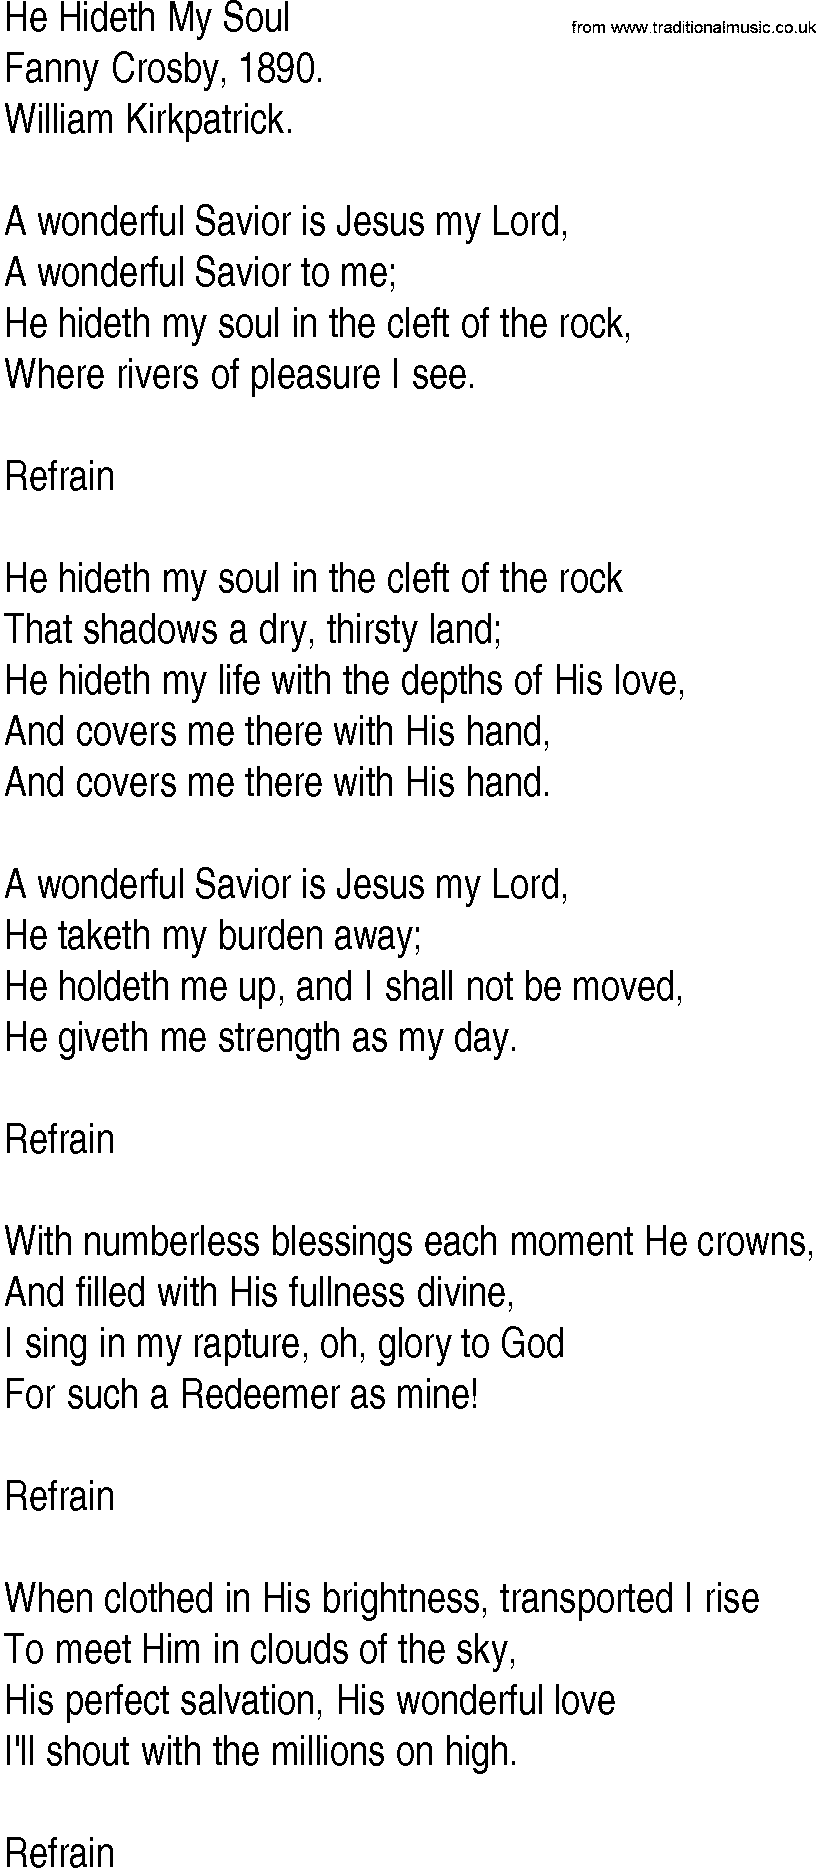 Hymn and Gospel Song: He Hideth My Soul by Fanny Crosby lyrics